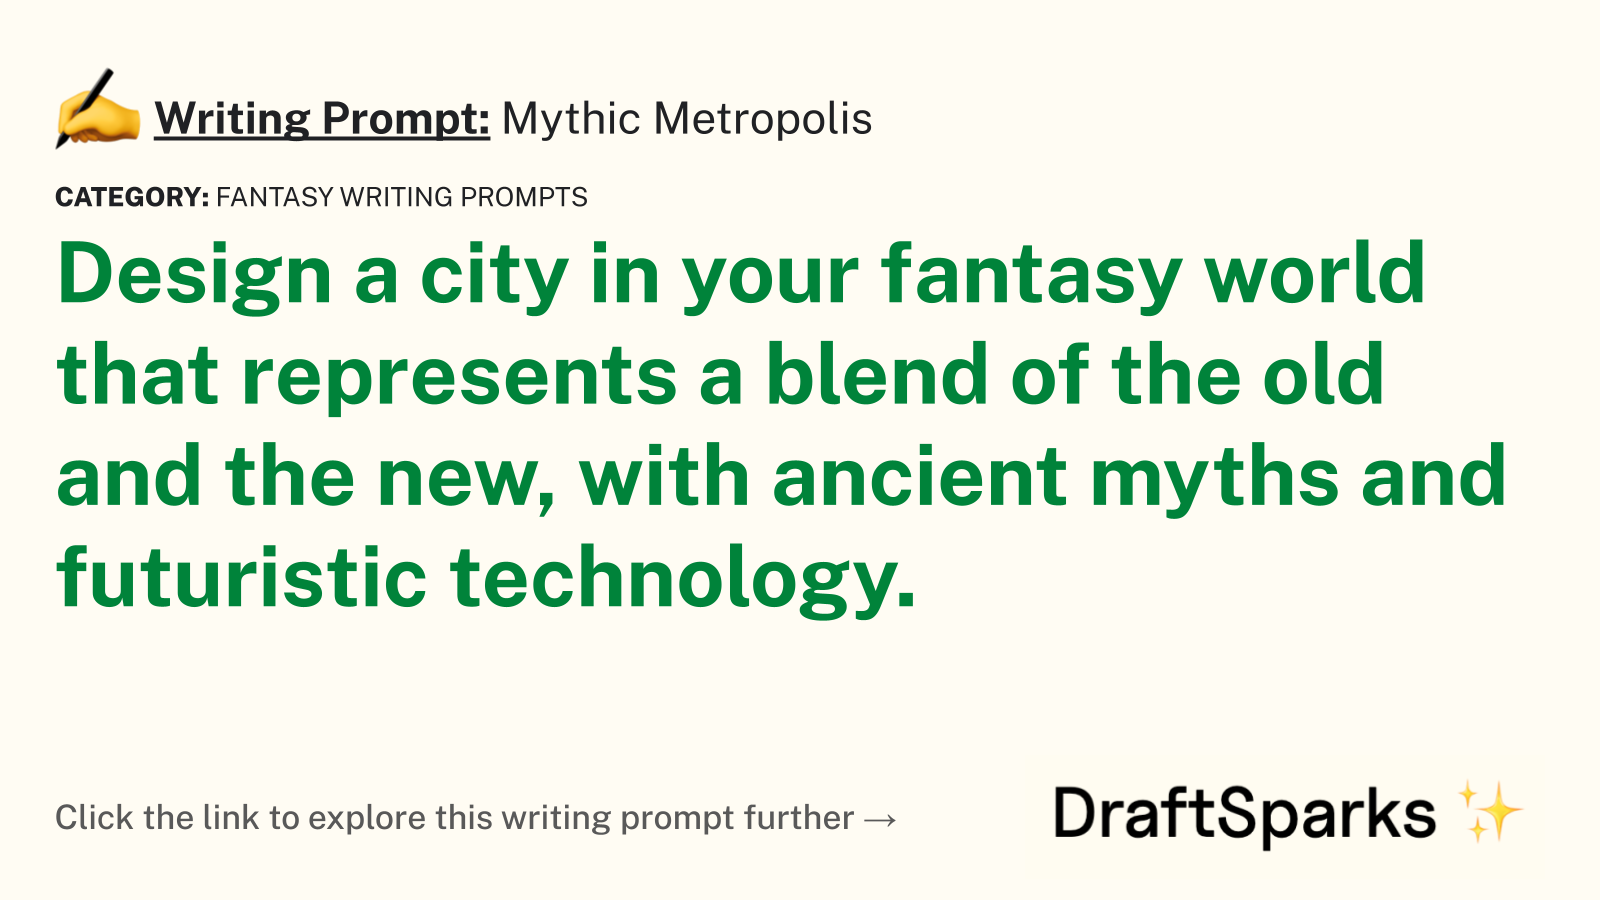 Mythic Metropolis